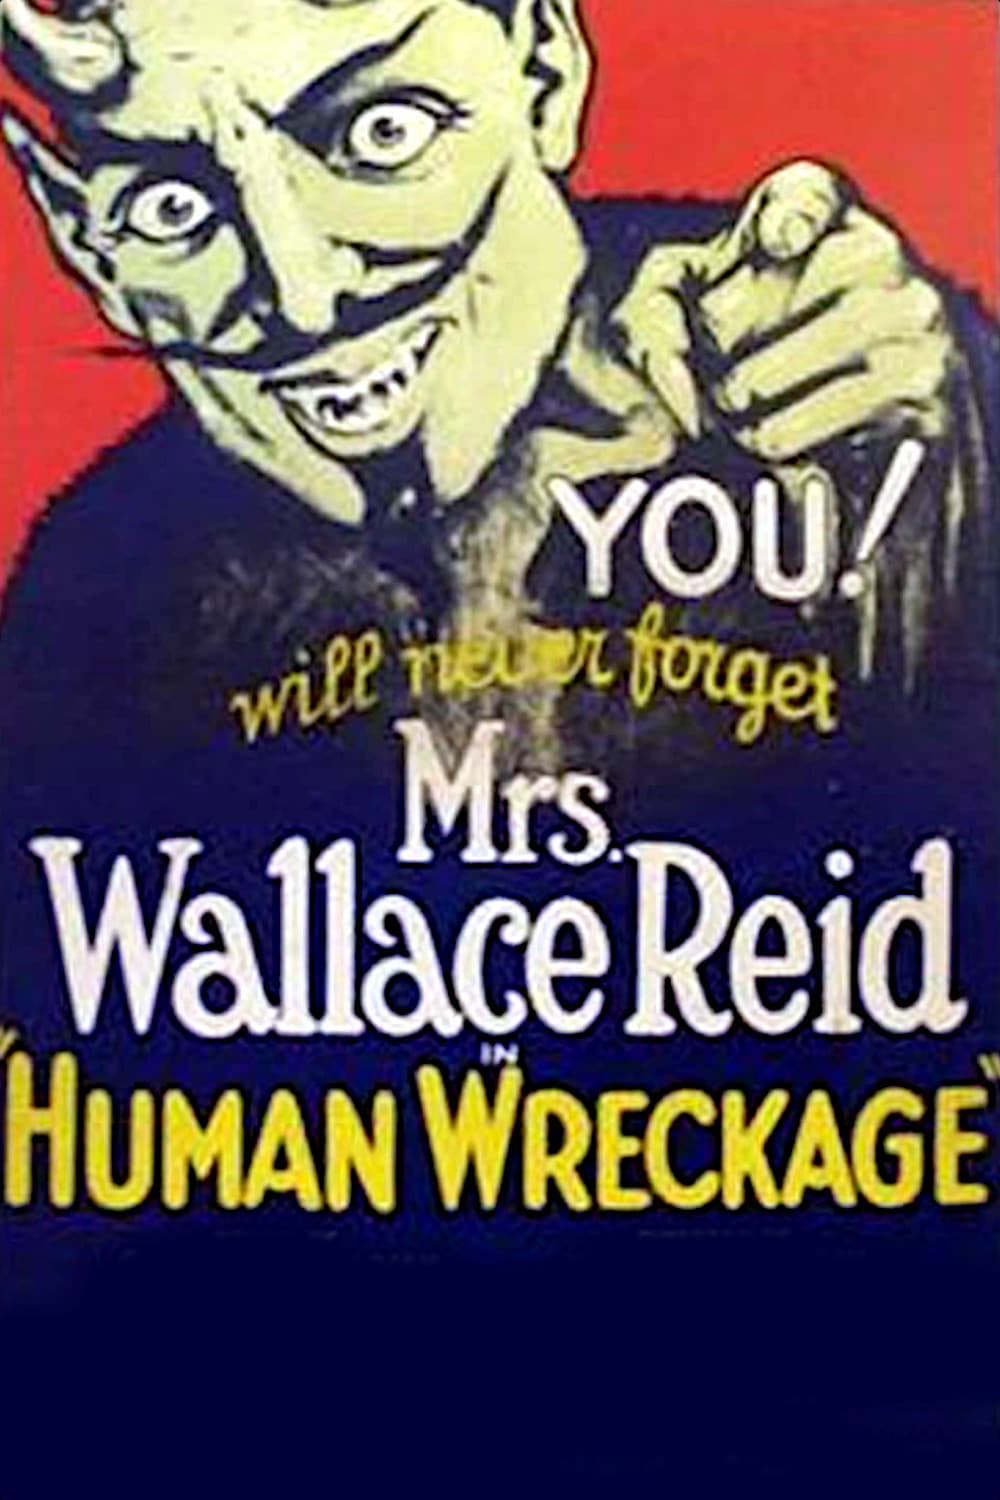 Human Wreckage (1923)